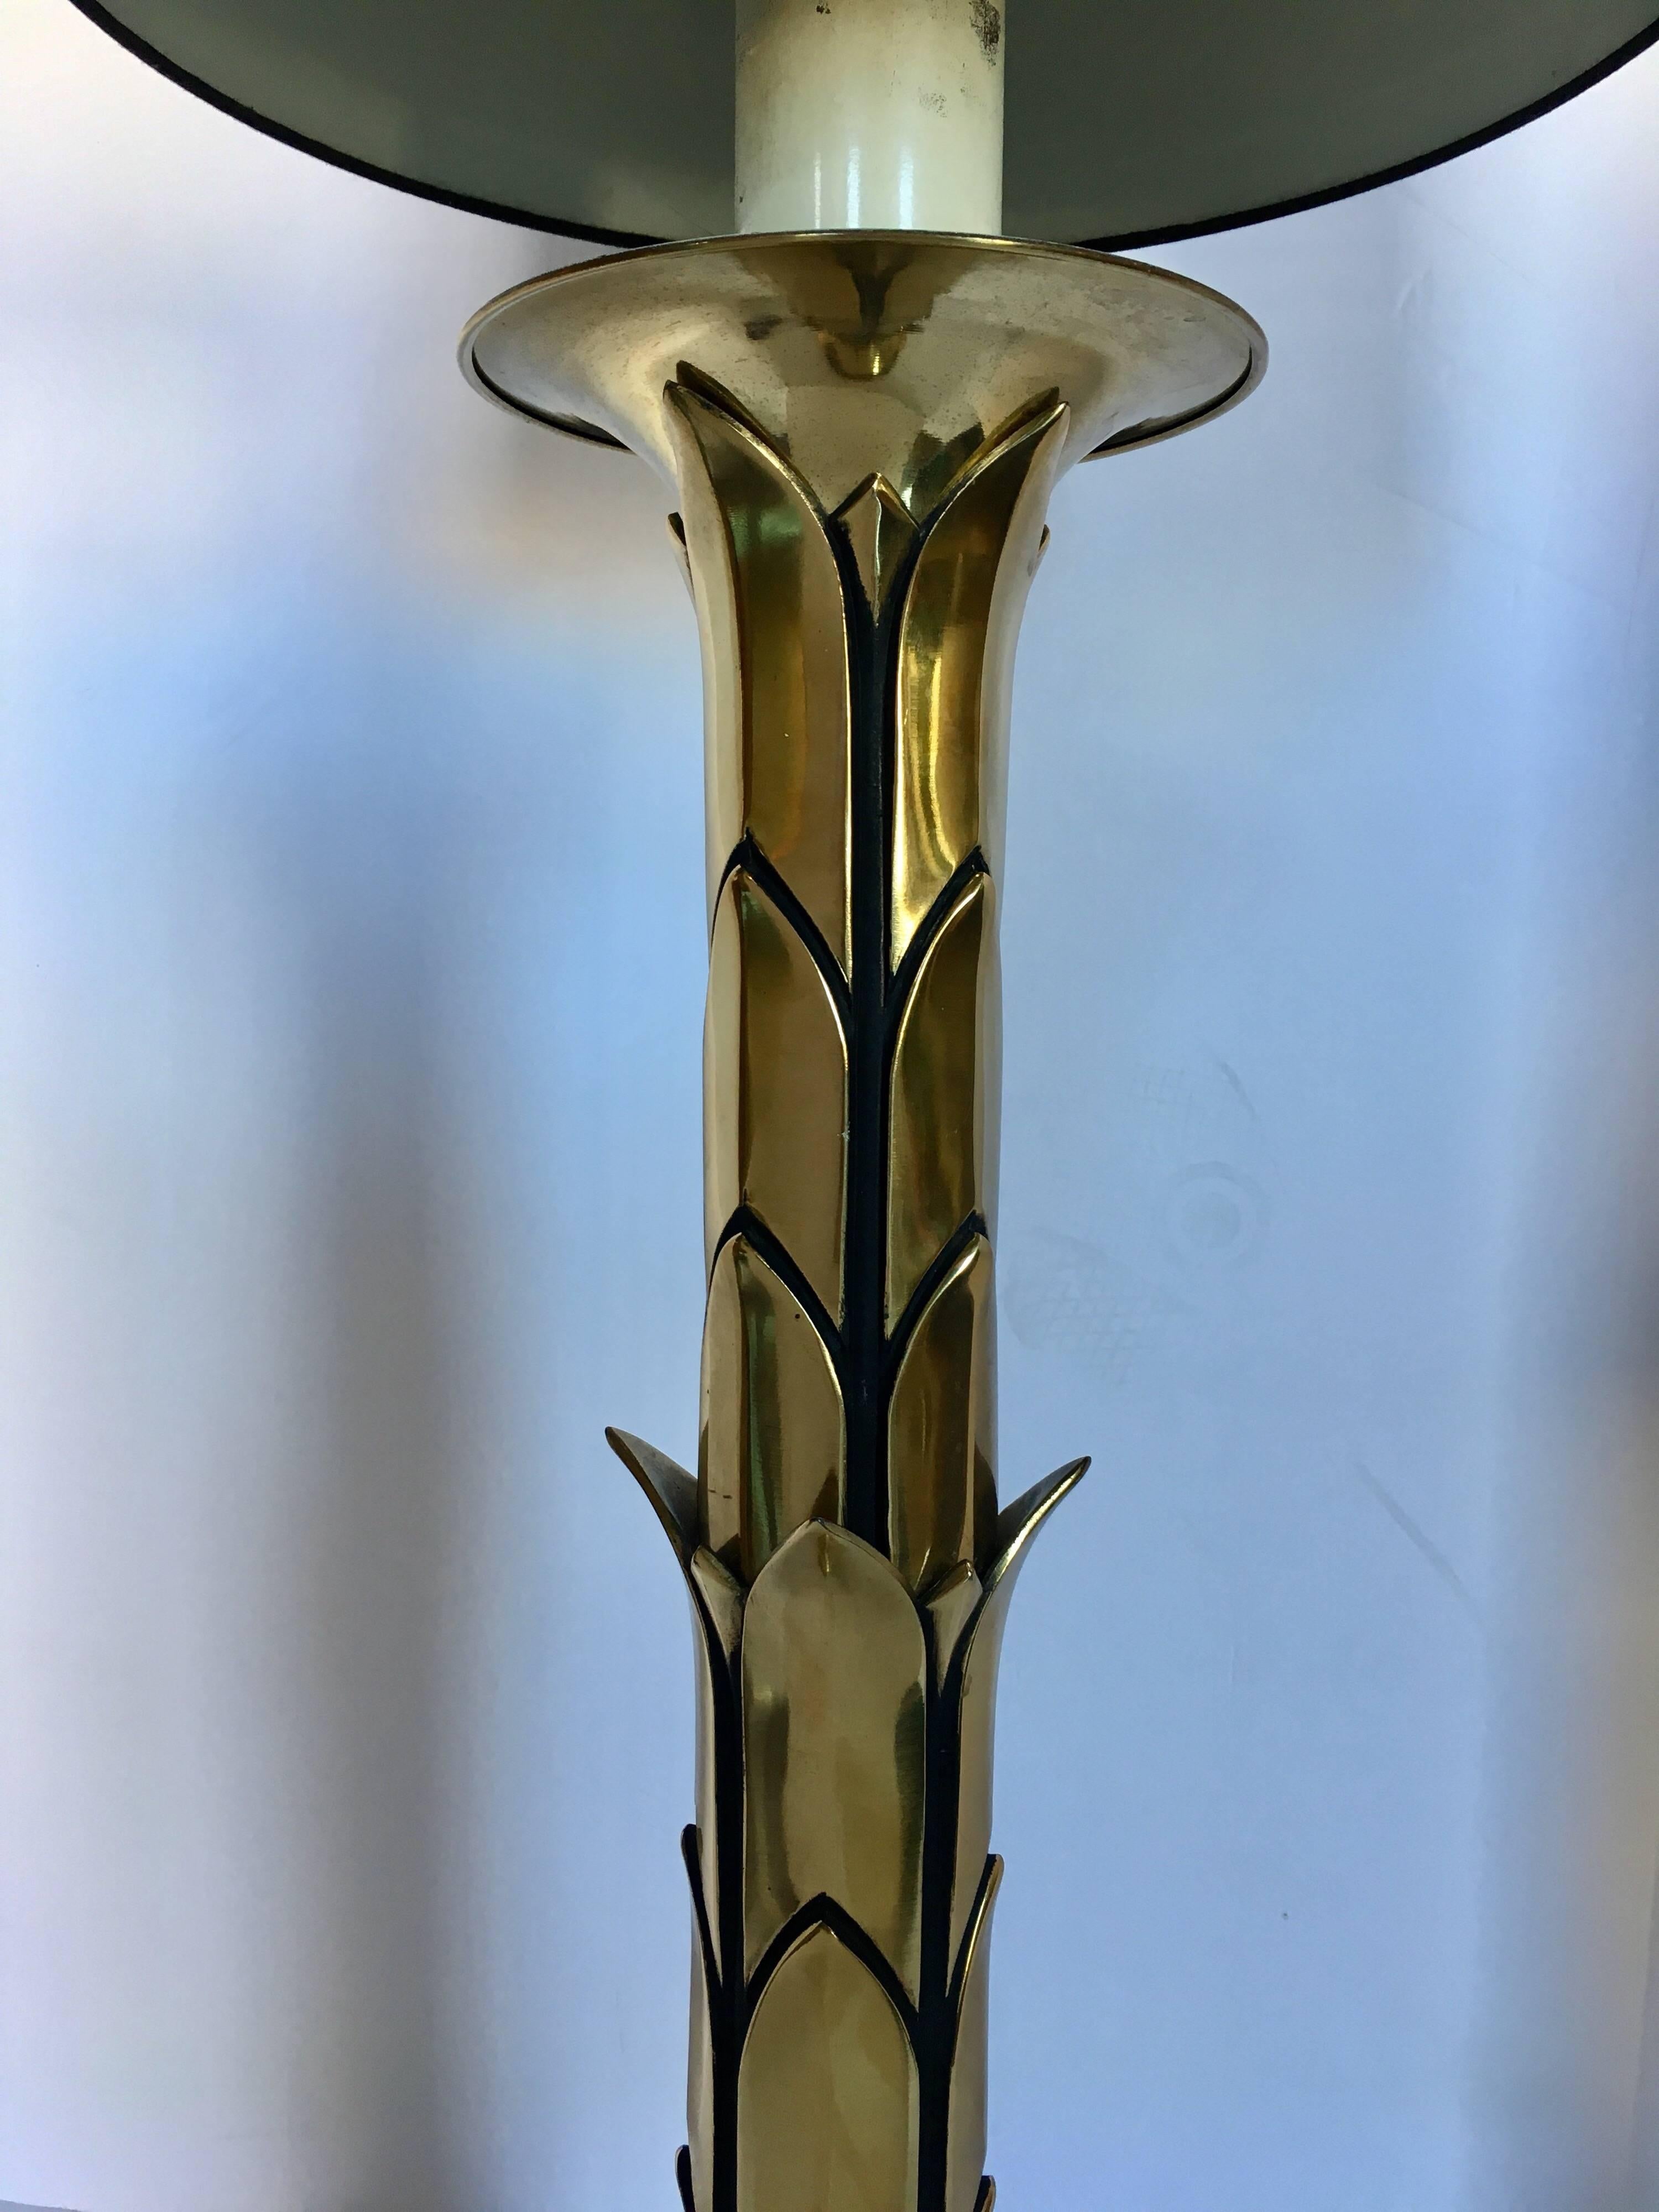 Lampe de table en laiton en forme de chandelier, de style Hollywood Regency, du milieu du siècle dernier. Dans le style de la Maison Jansen.
Mesures : Hauteur 39,5 au sommet de la harpe. Abat-jour non compris.